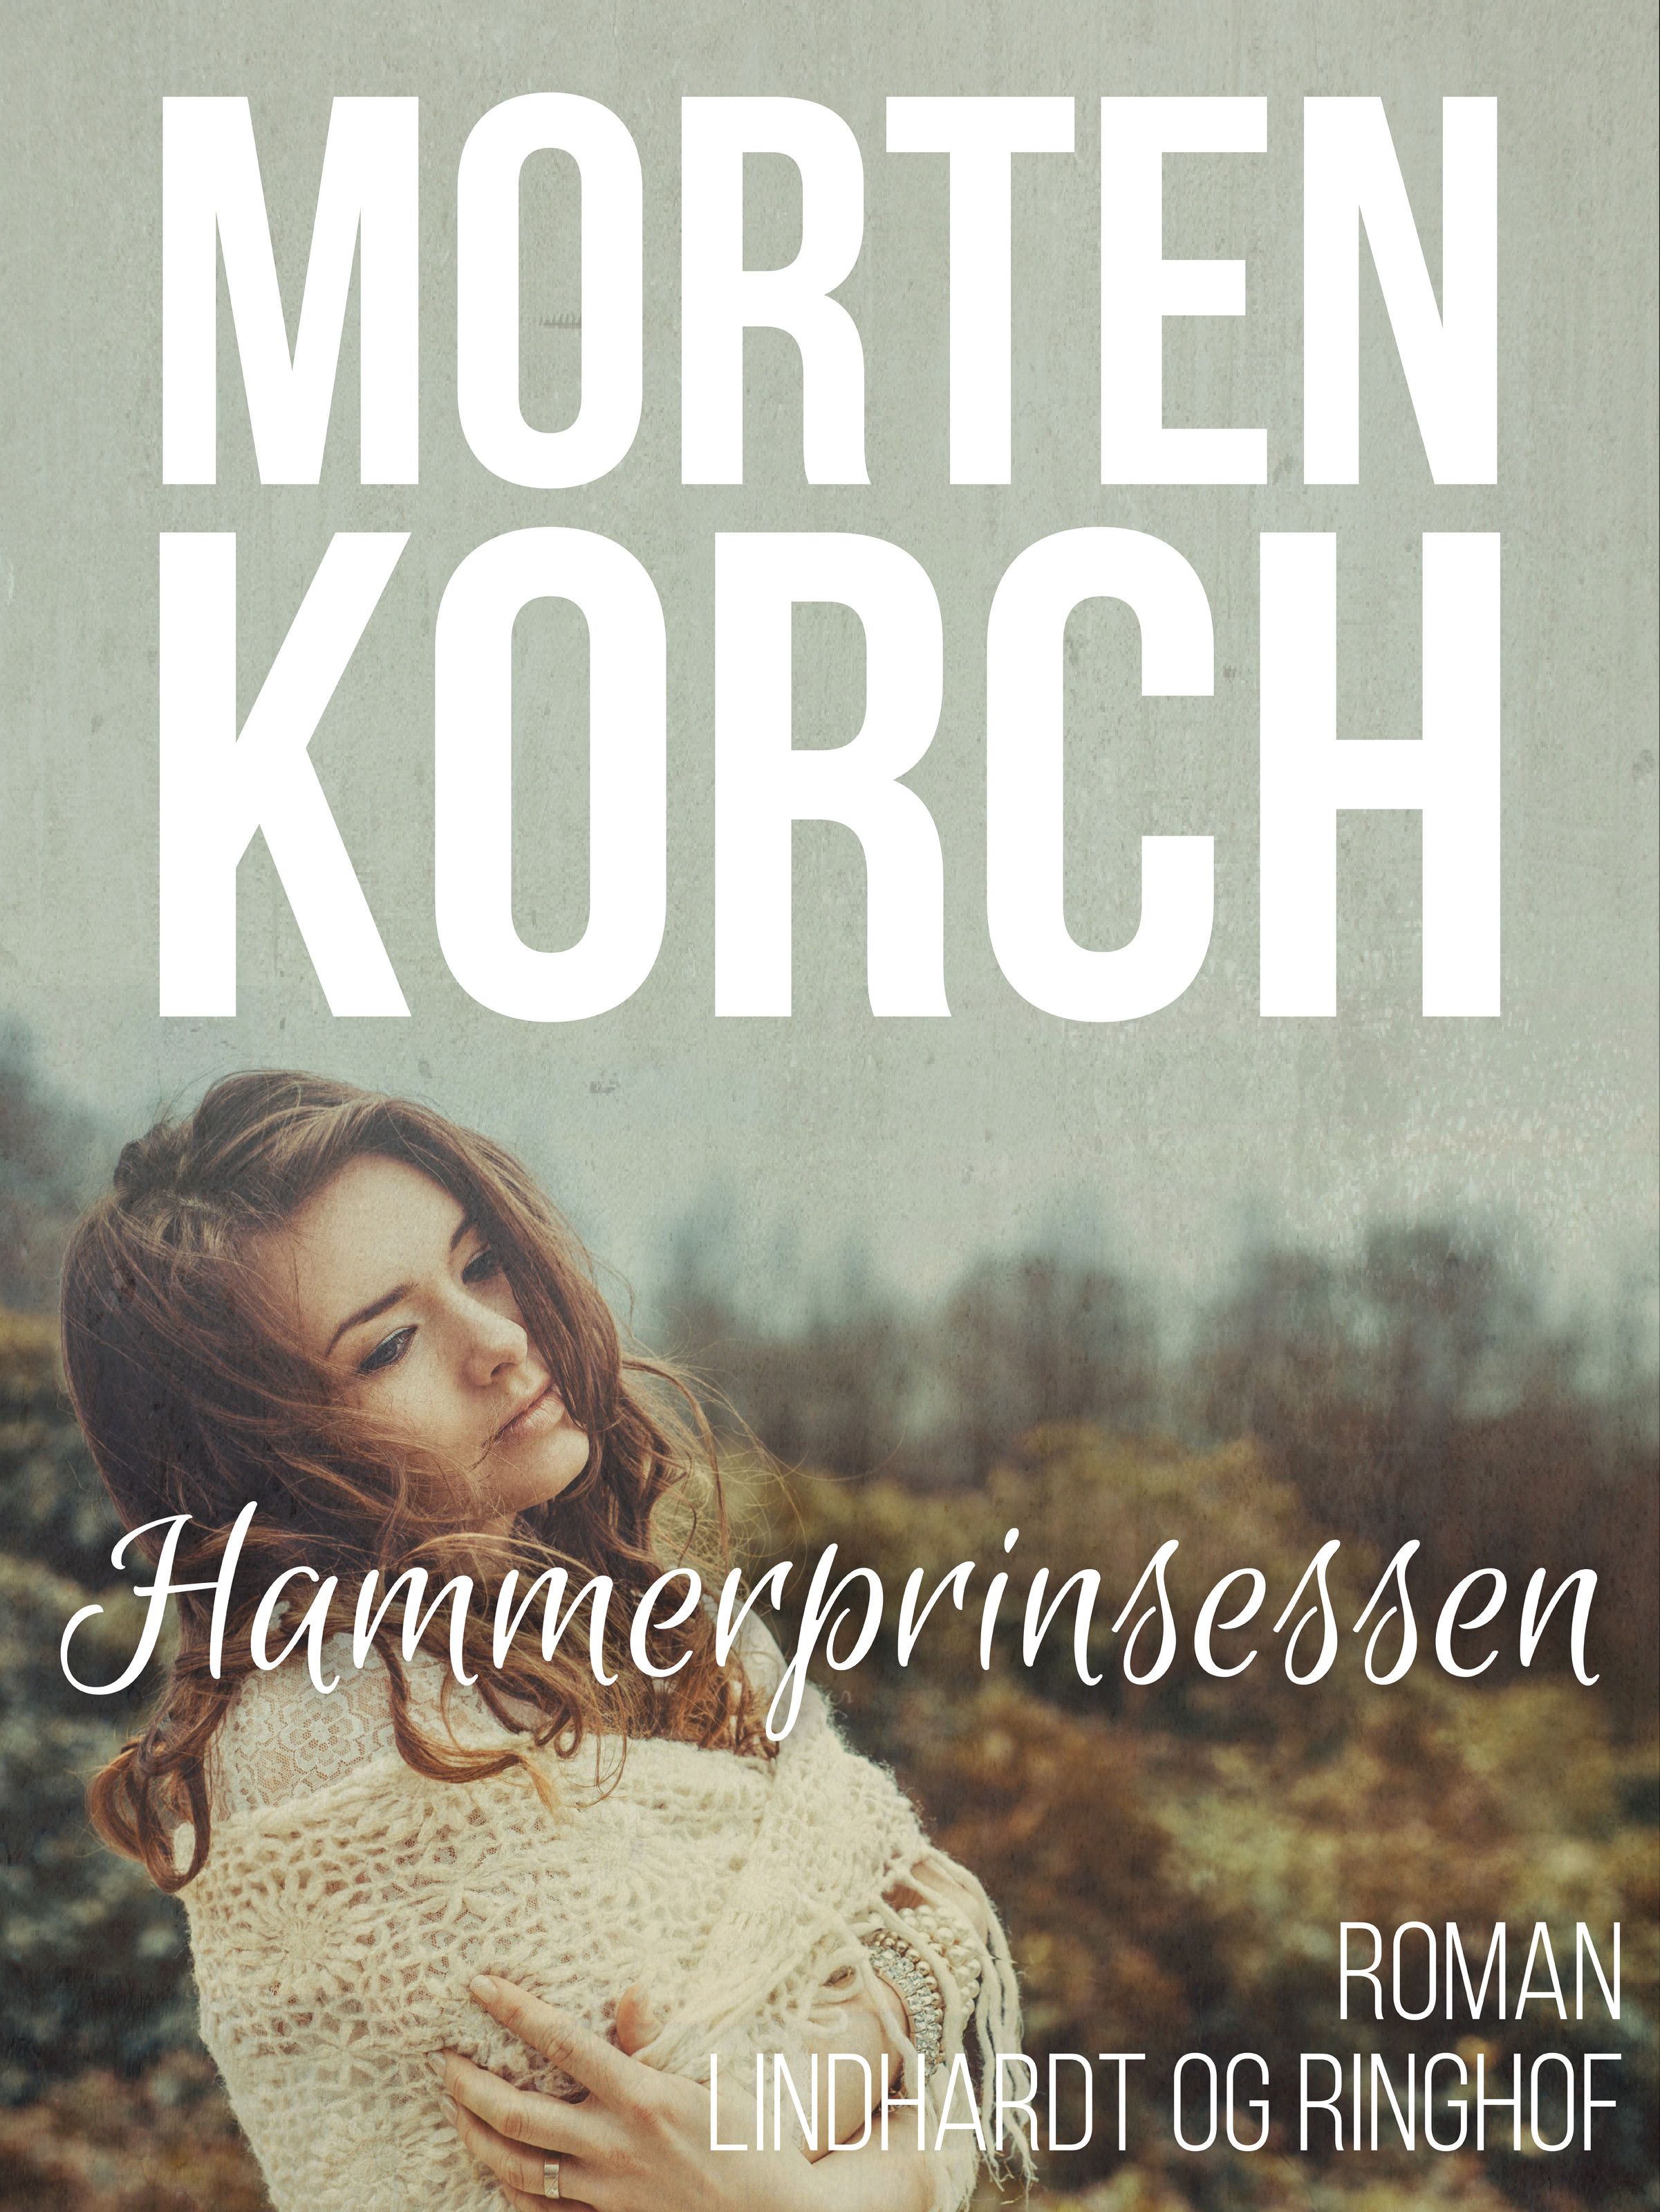 Hammerprinsessen, lydbog af Morten Korch